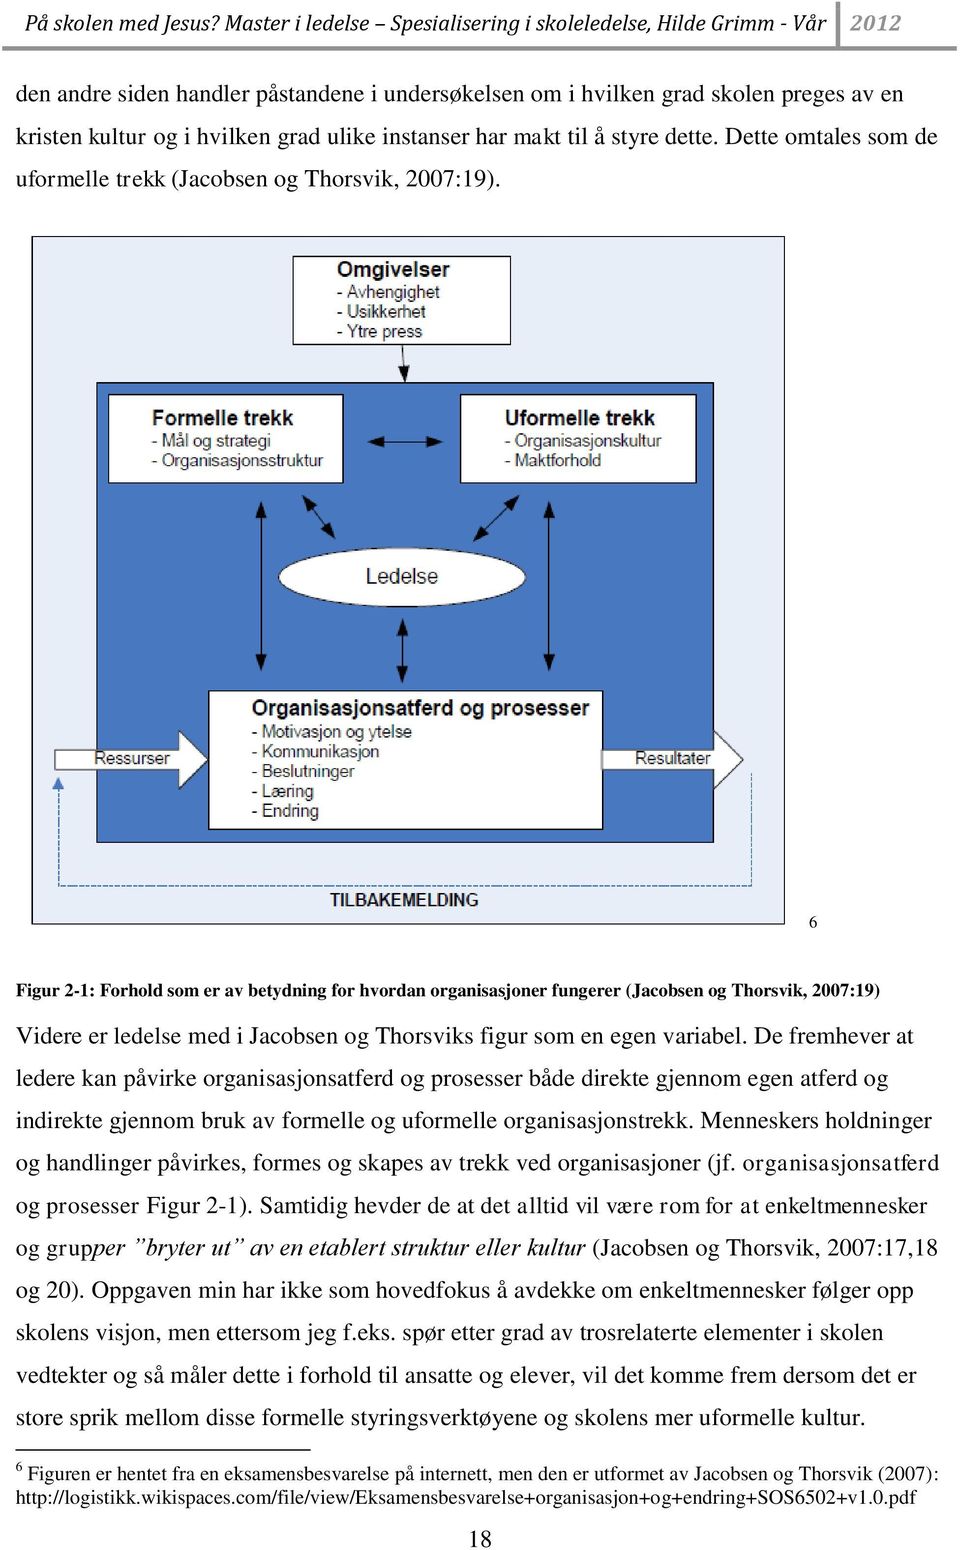 6 Figur 2-1: Forhold som er av betydning for hvordan organisasjoner fungerer (Jacobsen og Thorsvik, 2007:19) Videre er ledelse med i Jacobsen og Thorsviks figur som en egen variabel.